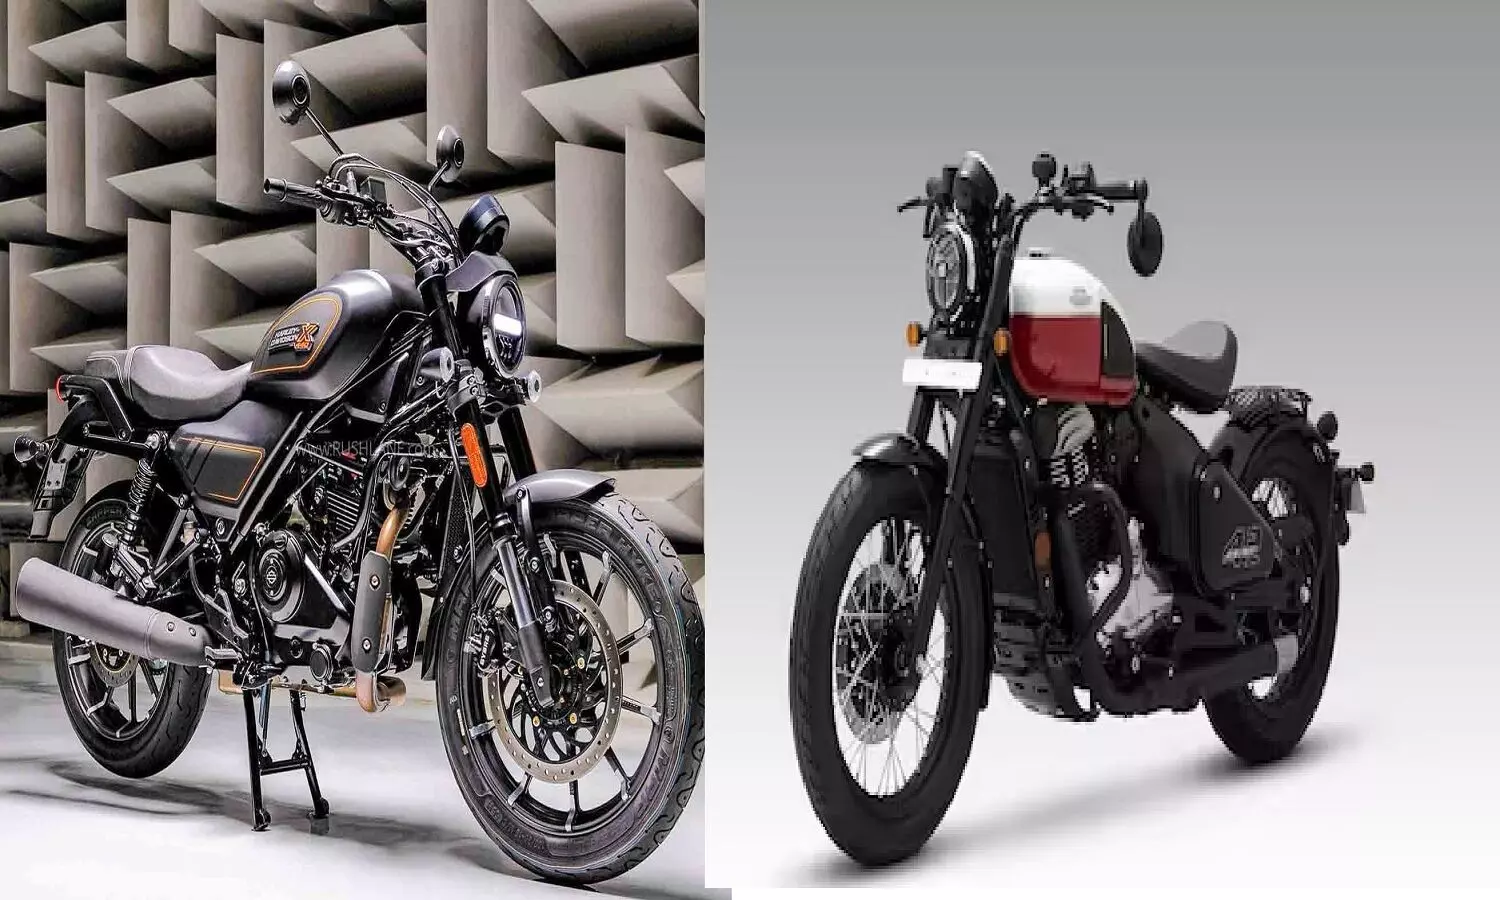 Harley Davidson X440 Vs Java 42 Bobber कौन सी बाइक है बेस्ट?